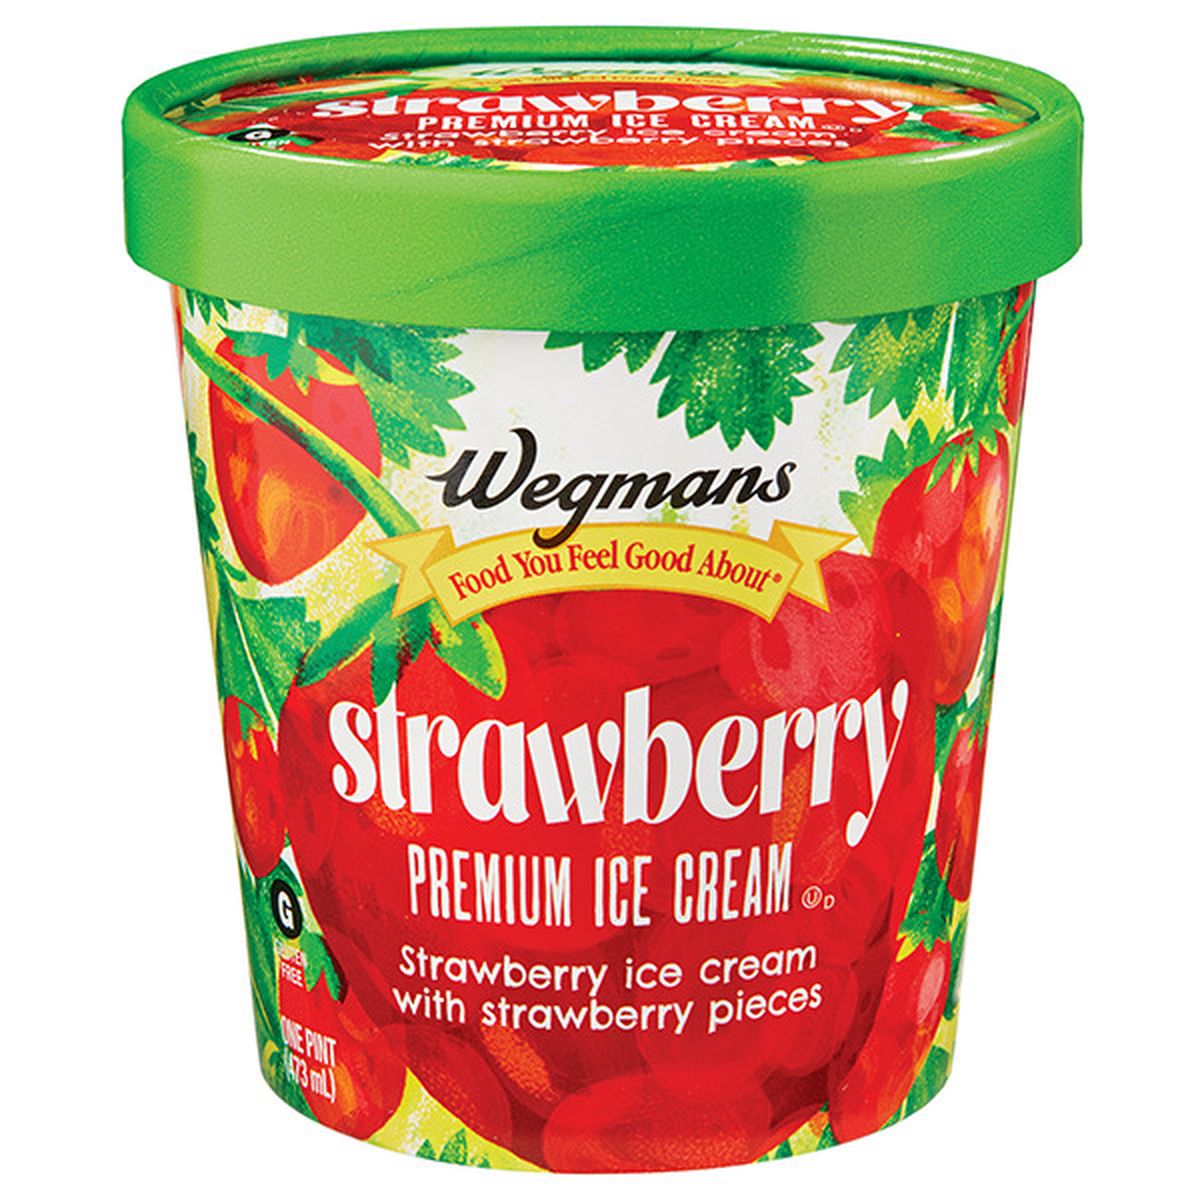 Calories in Wegmans Strawberry Premium Ice Cream